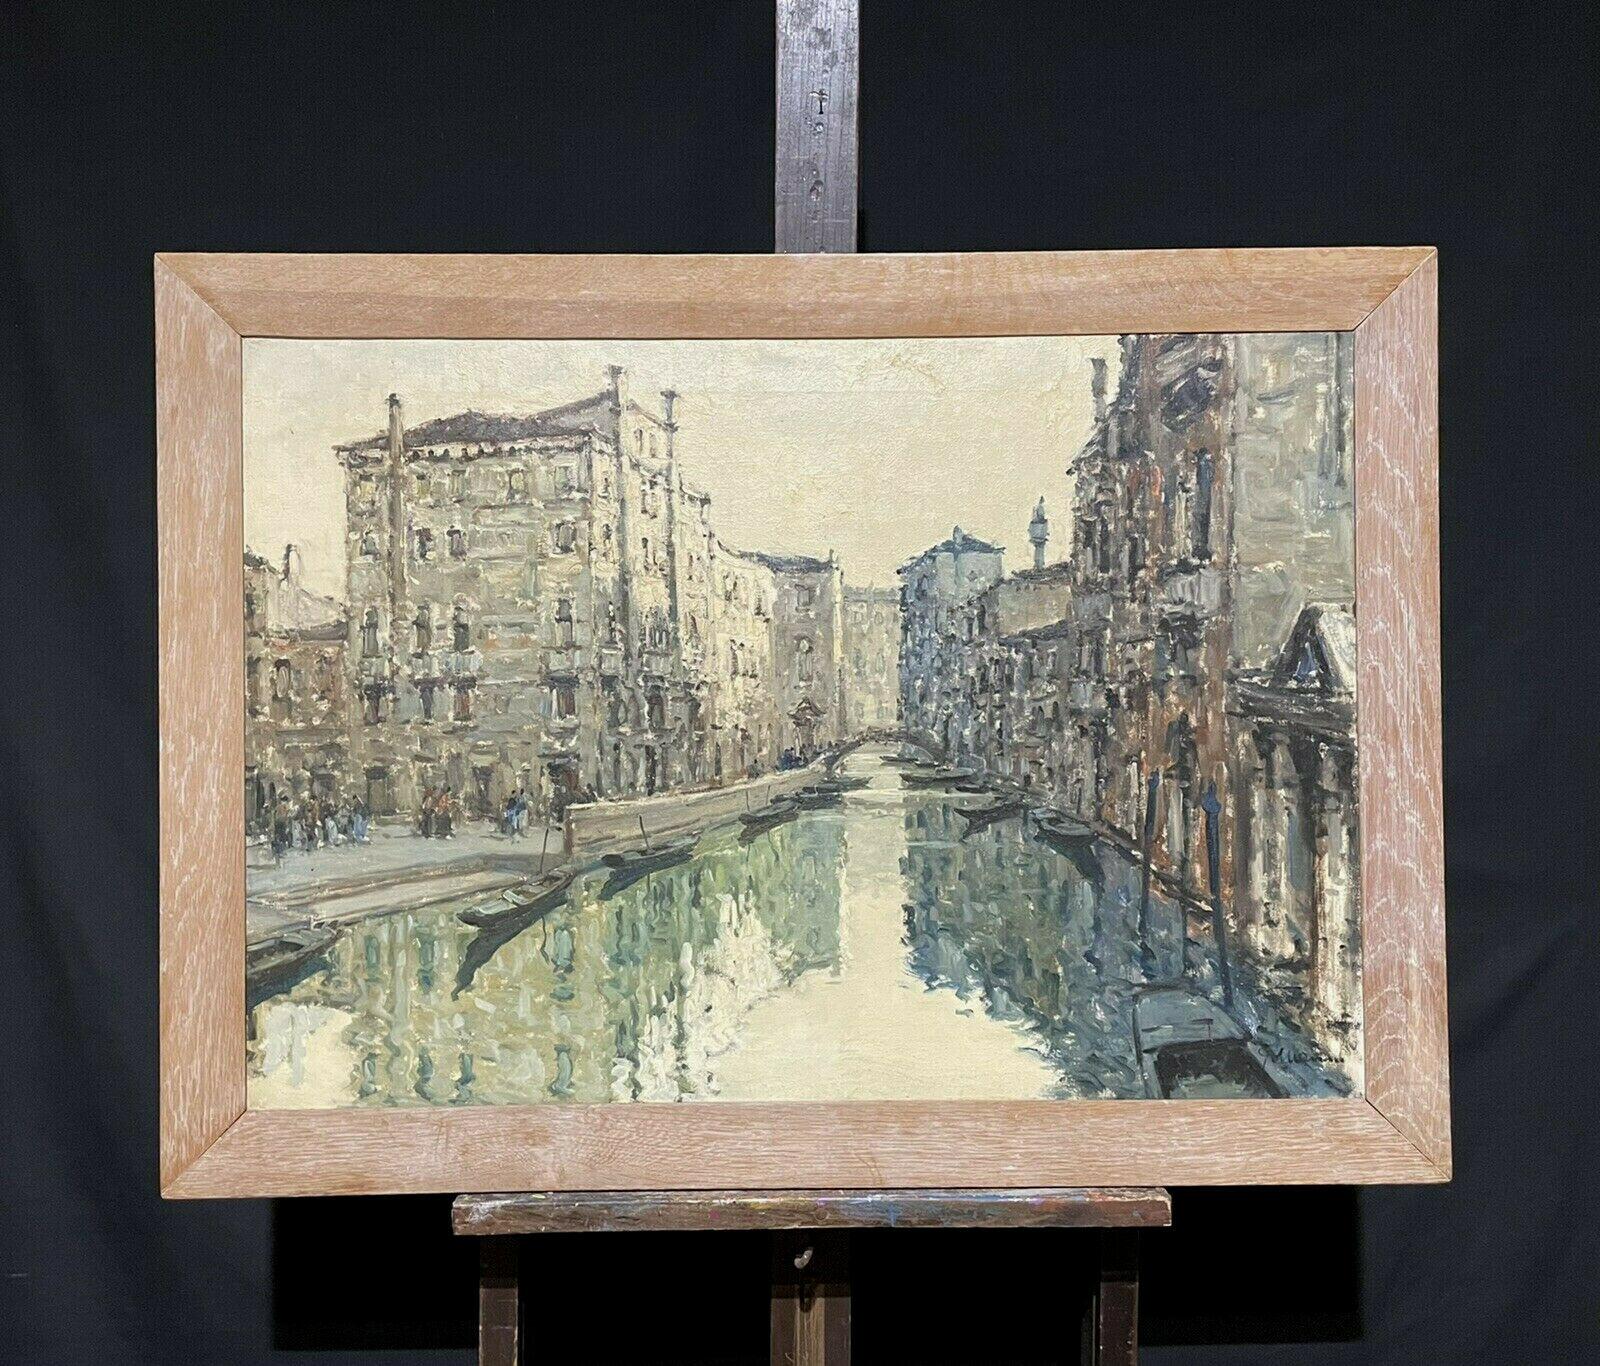 GRÖSSE 1960er Jahre ITANISCHES SIGNIERTES OIL - impressionistisches venezianisches RANQUIL-KanALSCHENE – Painting von Italian artist